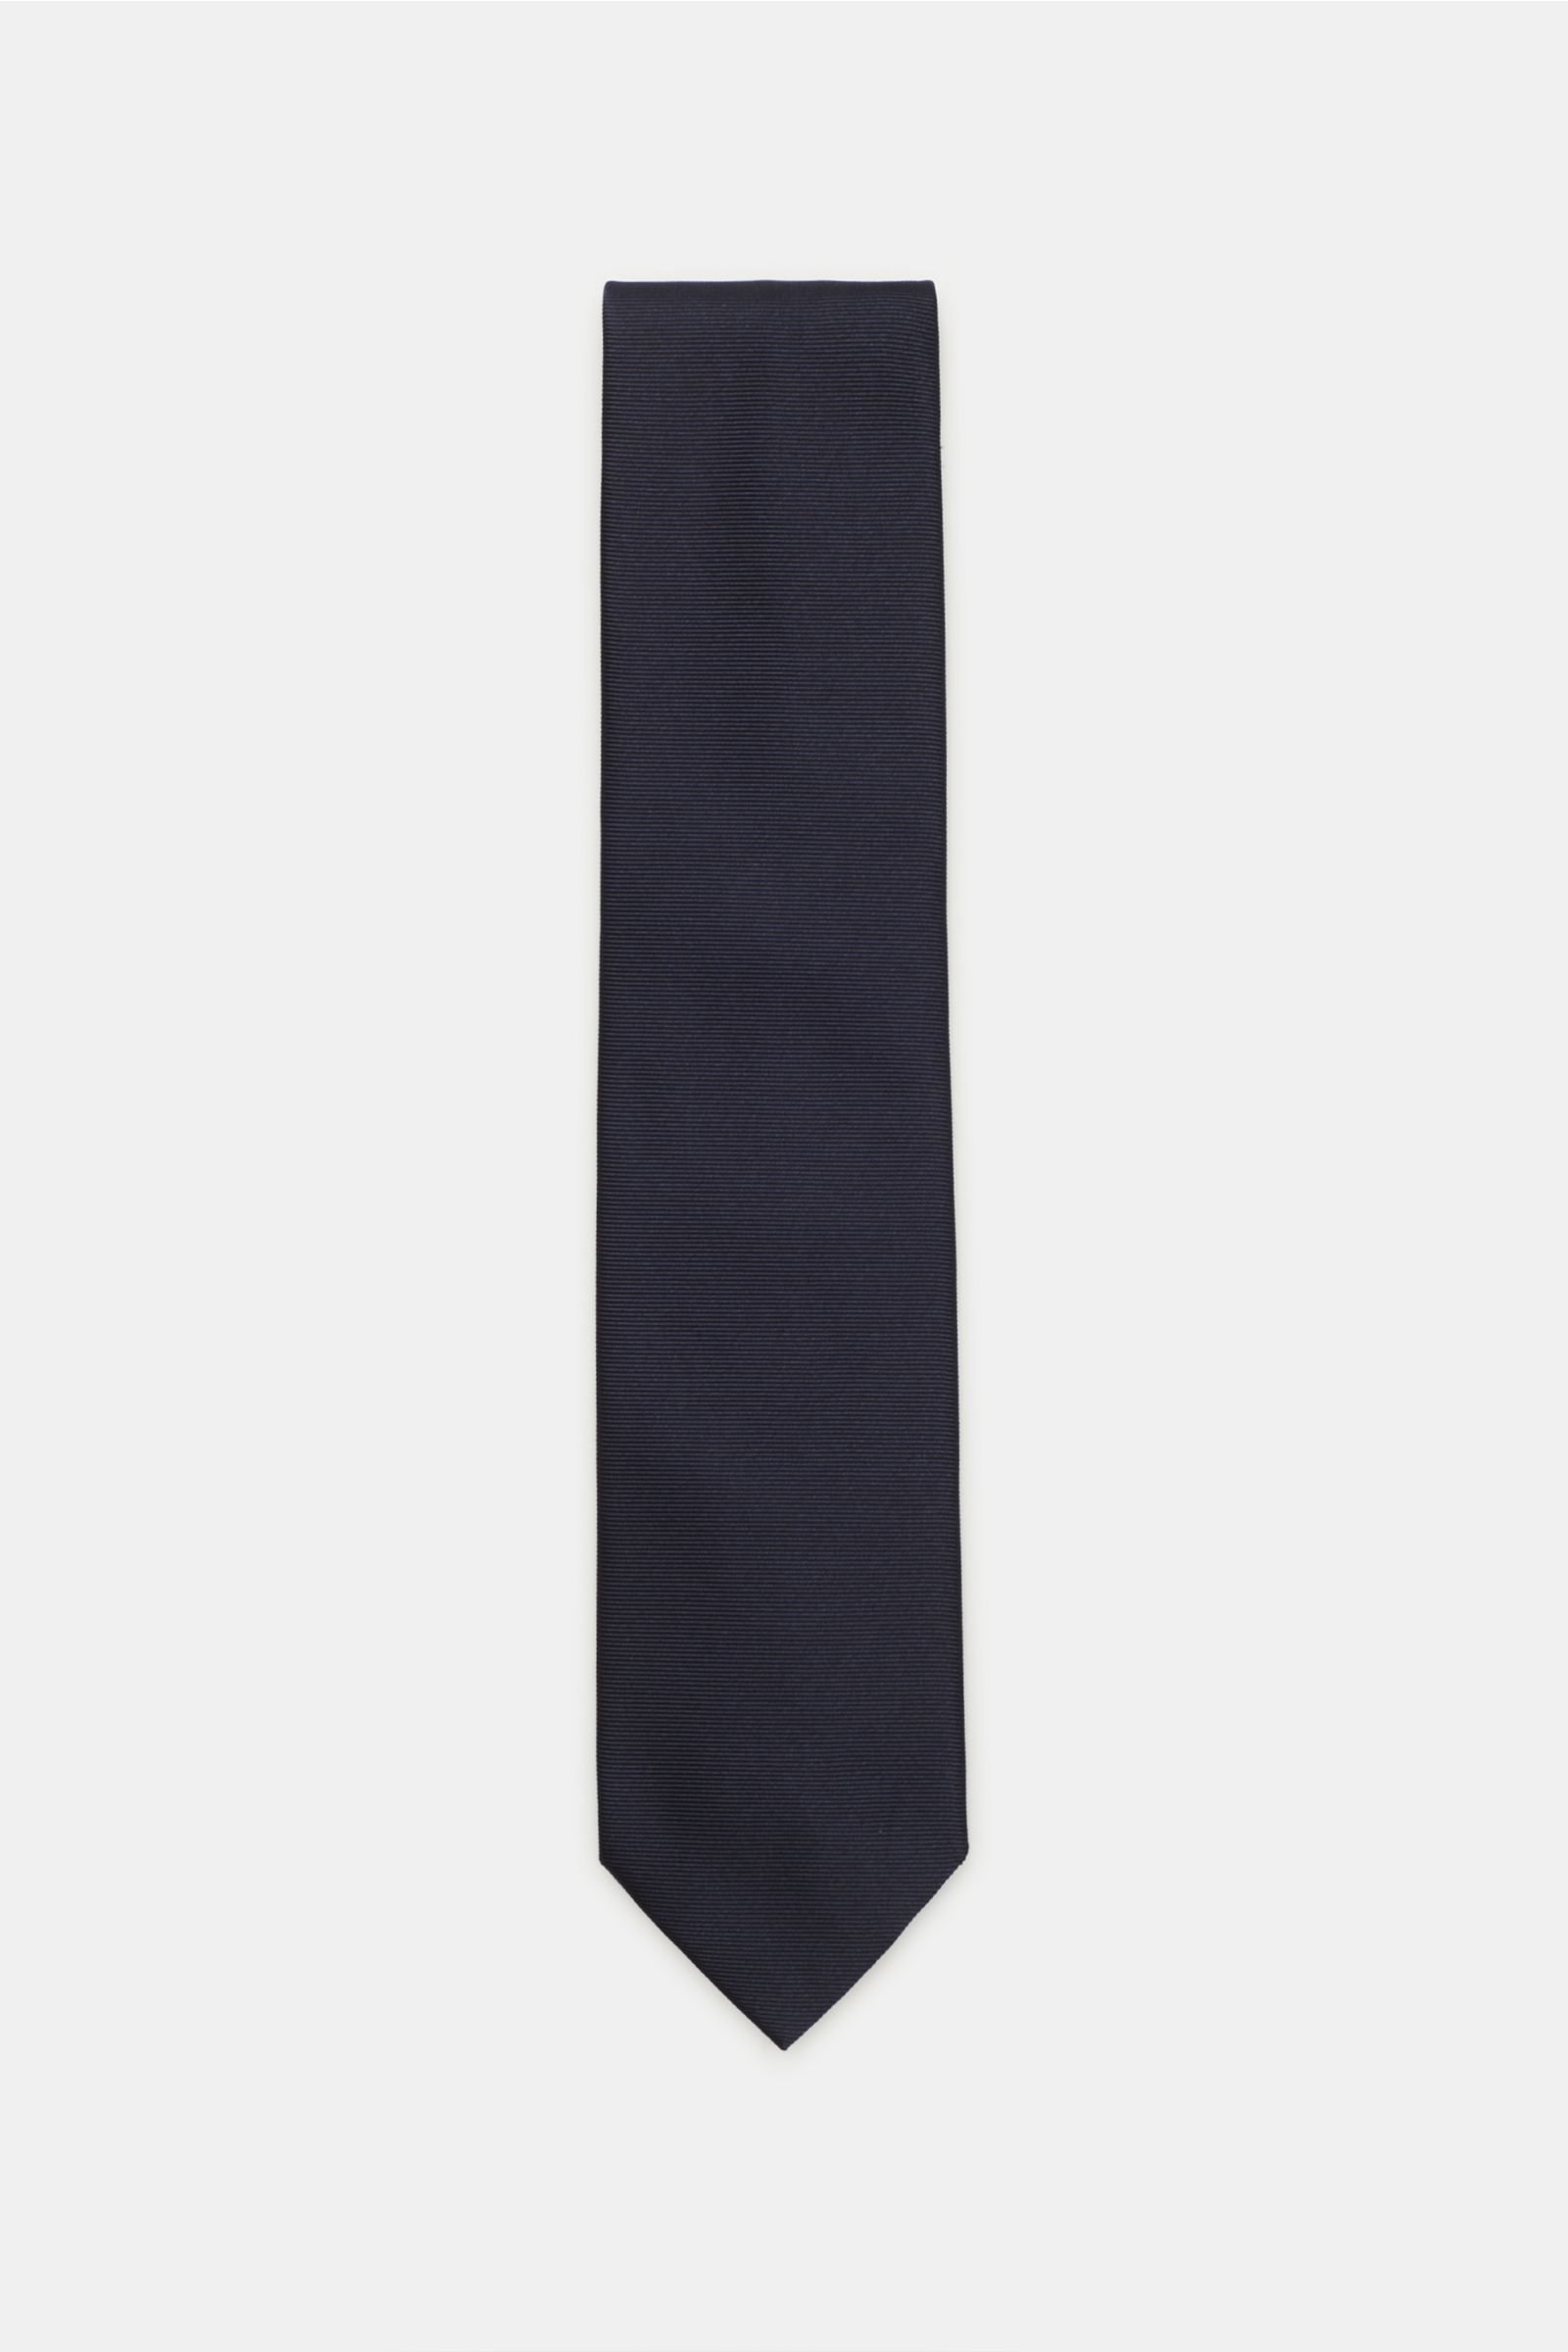 Silk tie navy